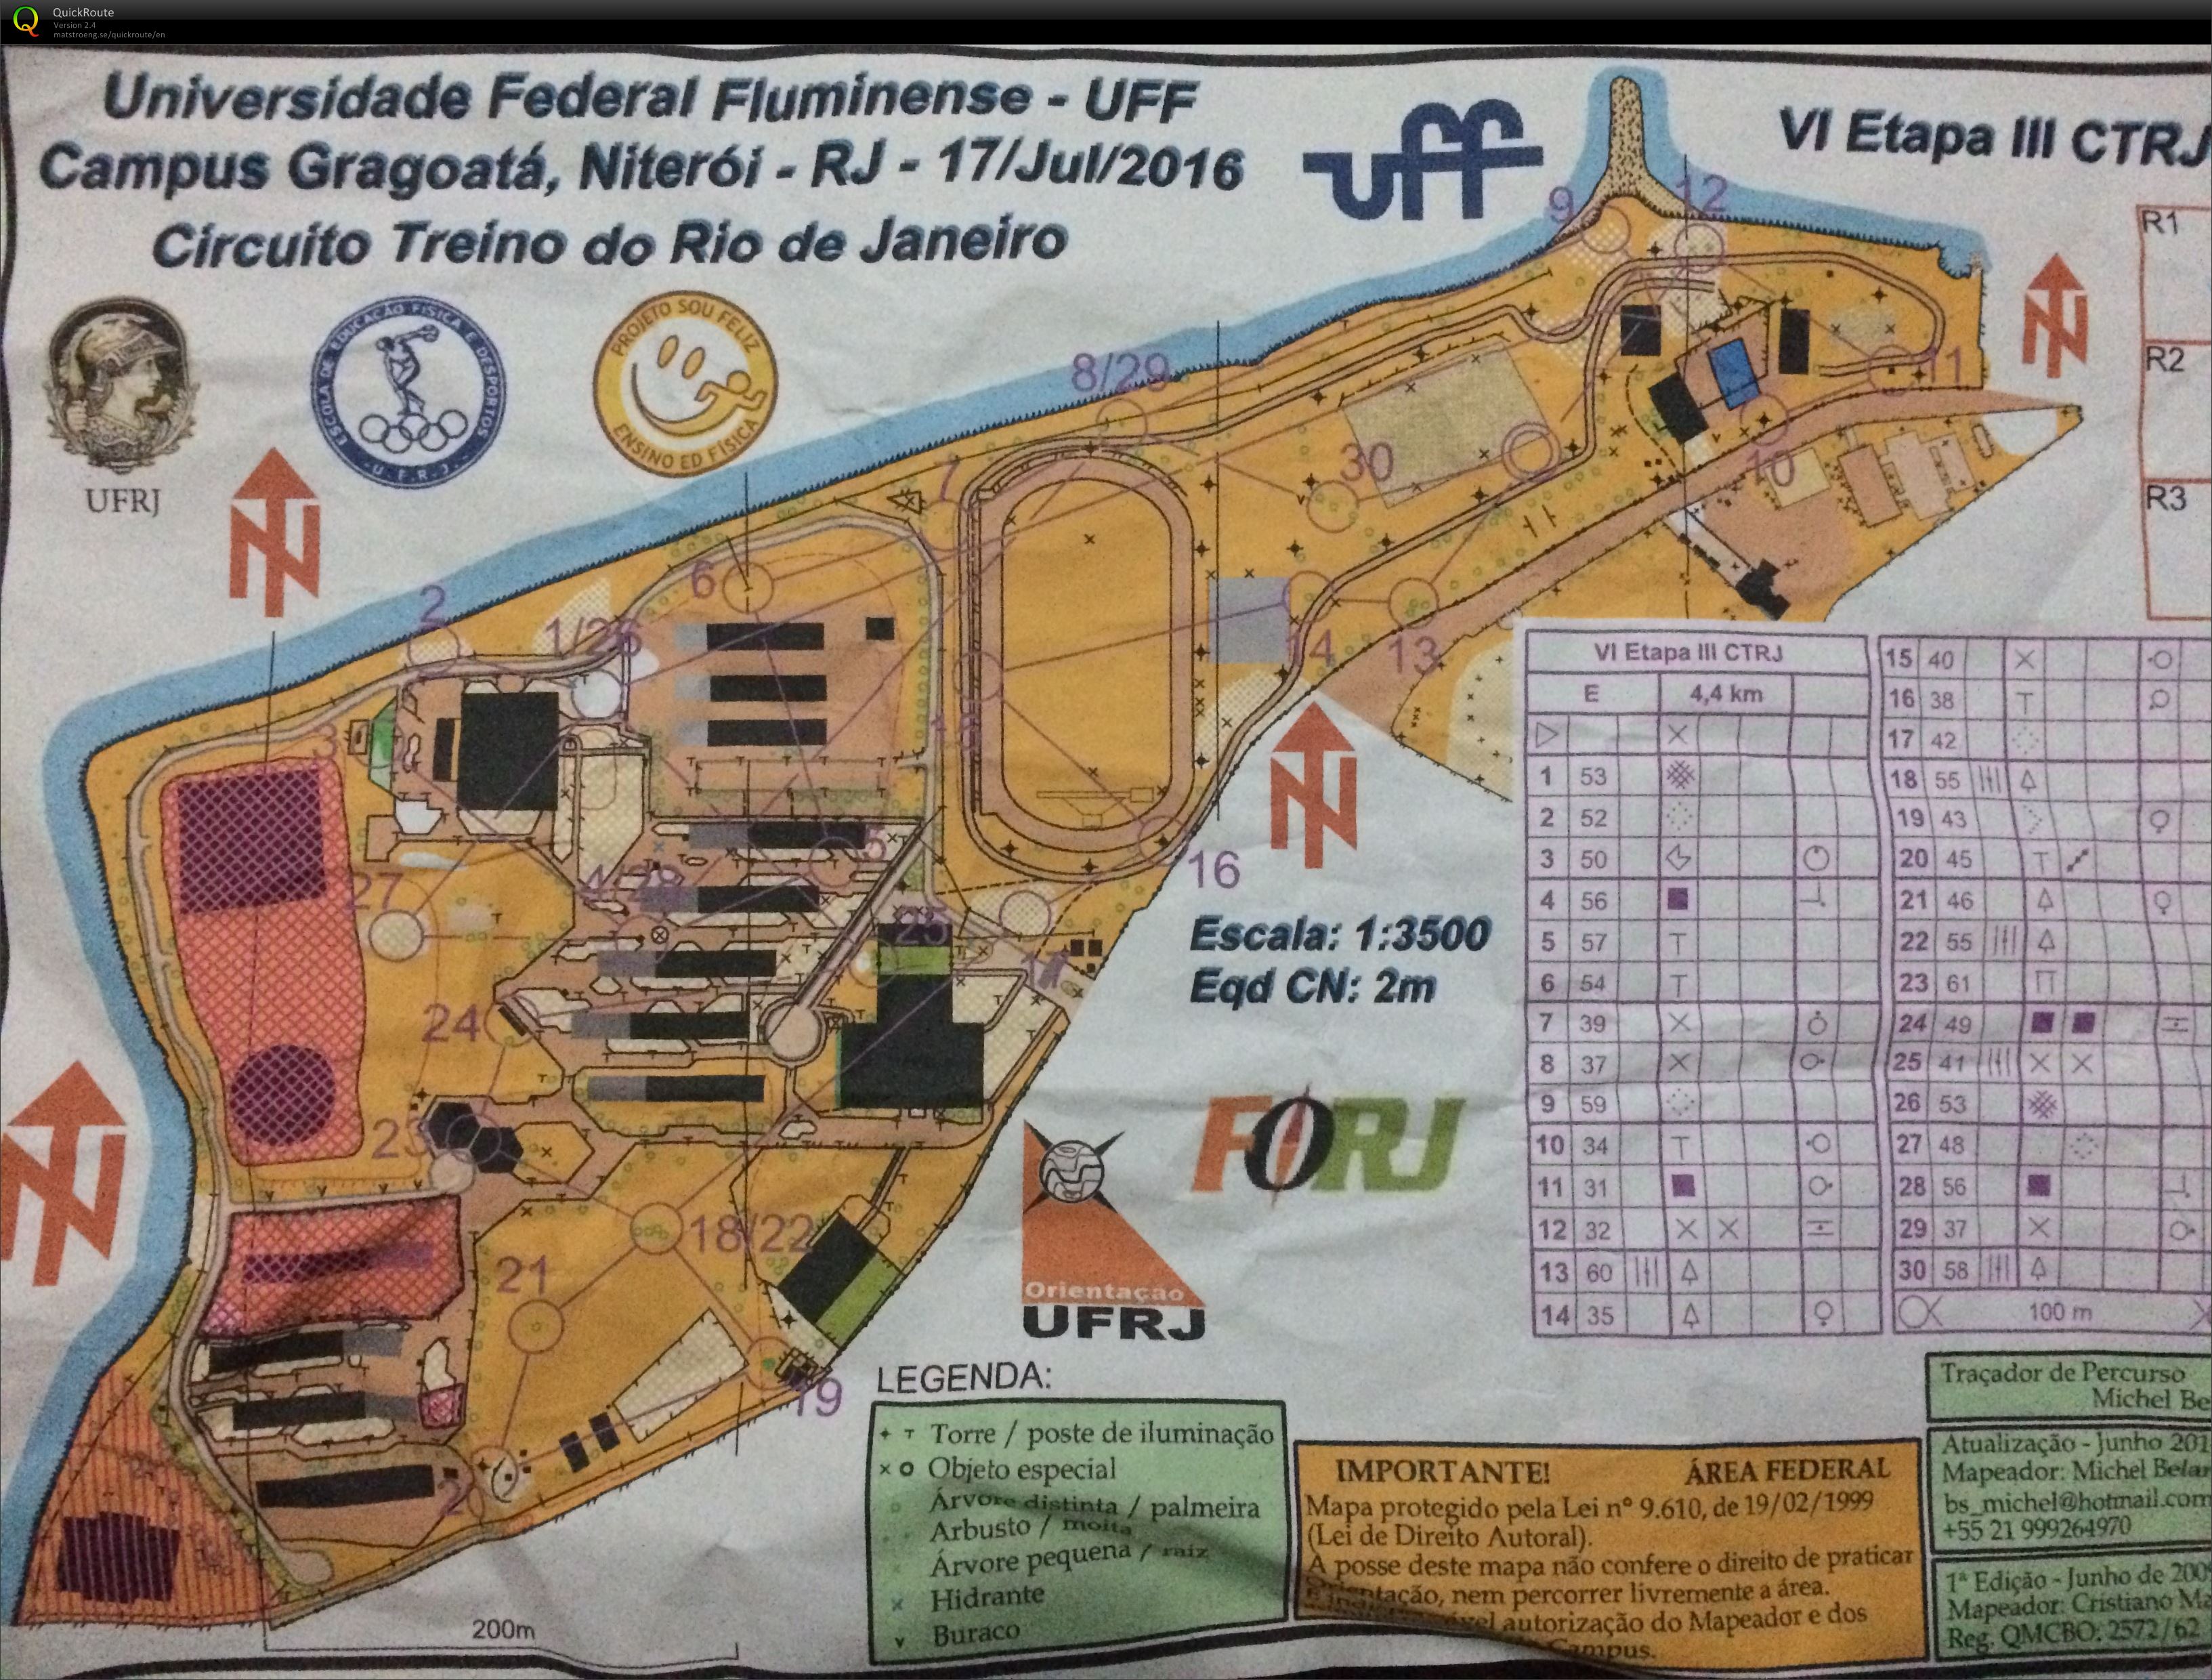 VI Etapa III, Circuito Treino do Rio de Janeiro (17/07/2016)